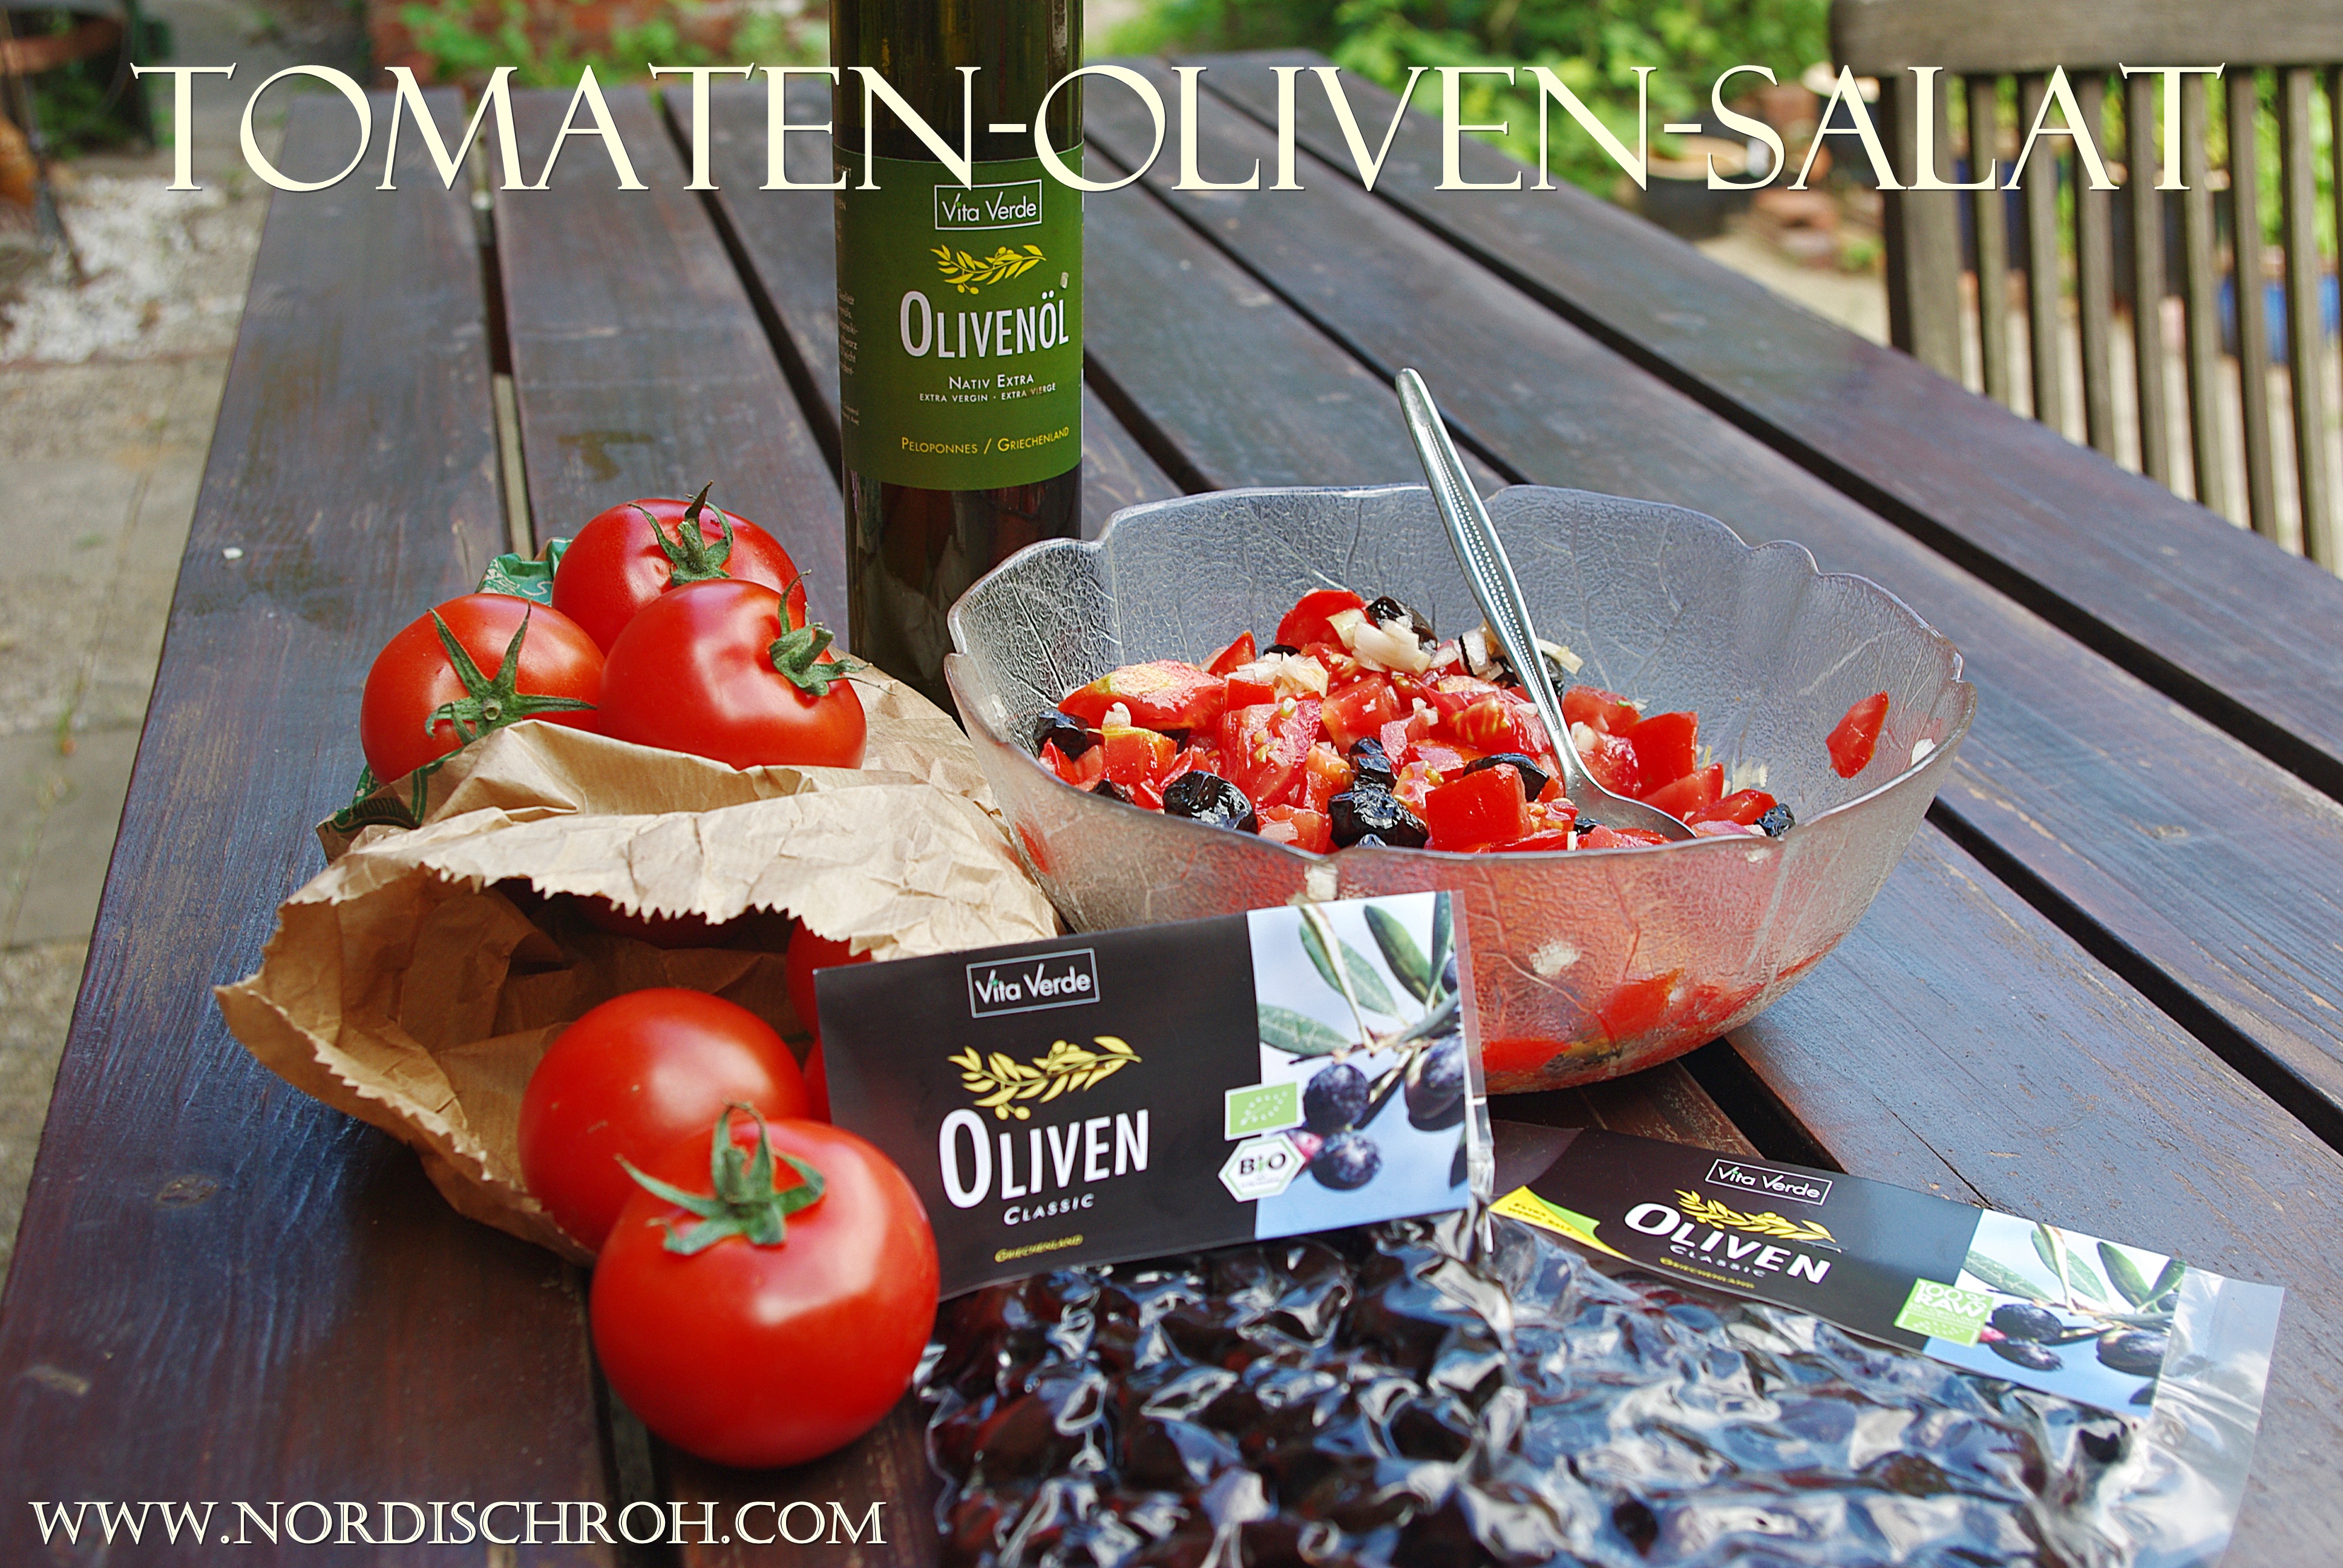 Oliven Tomaten Salat - purer Genuss - Nordischroh